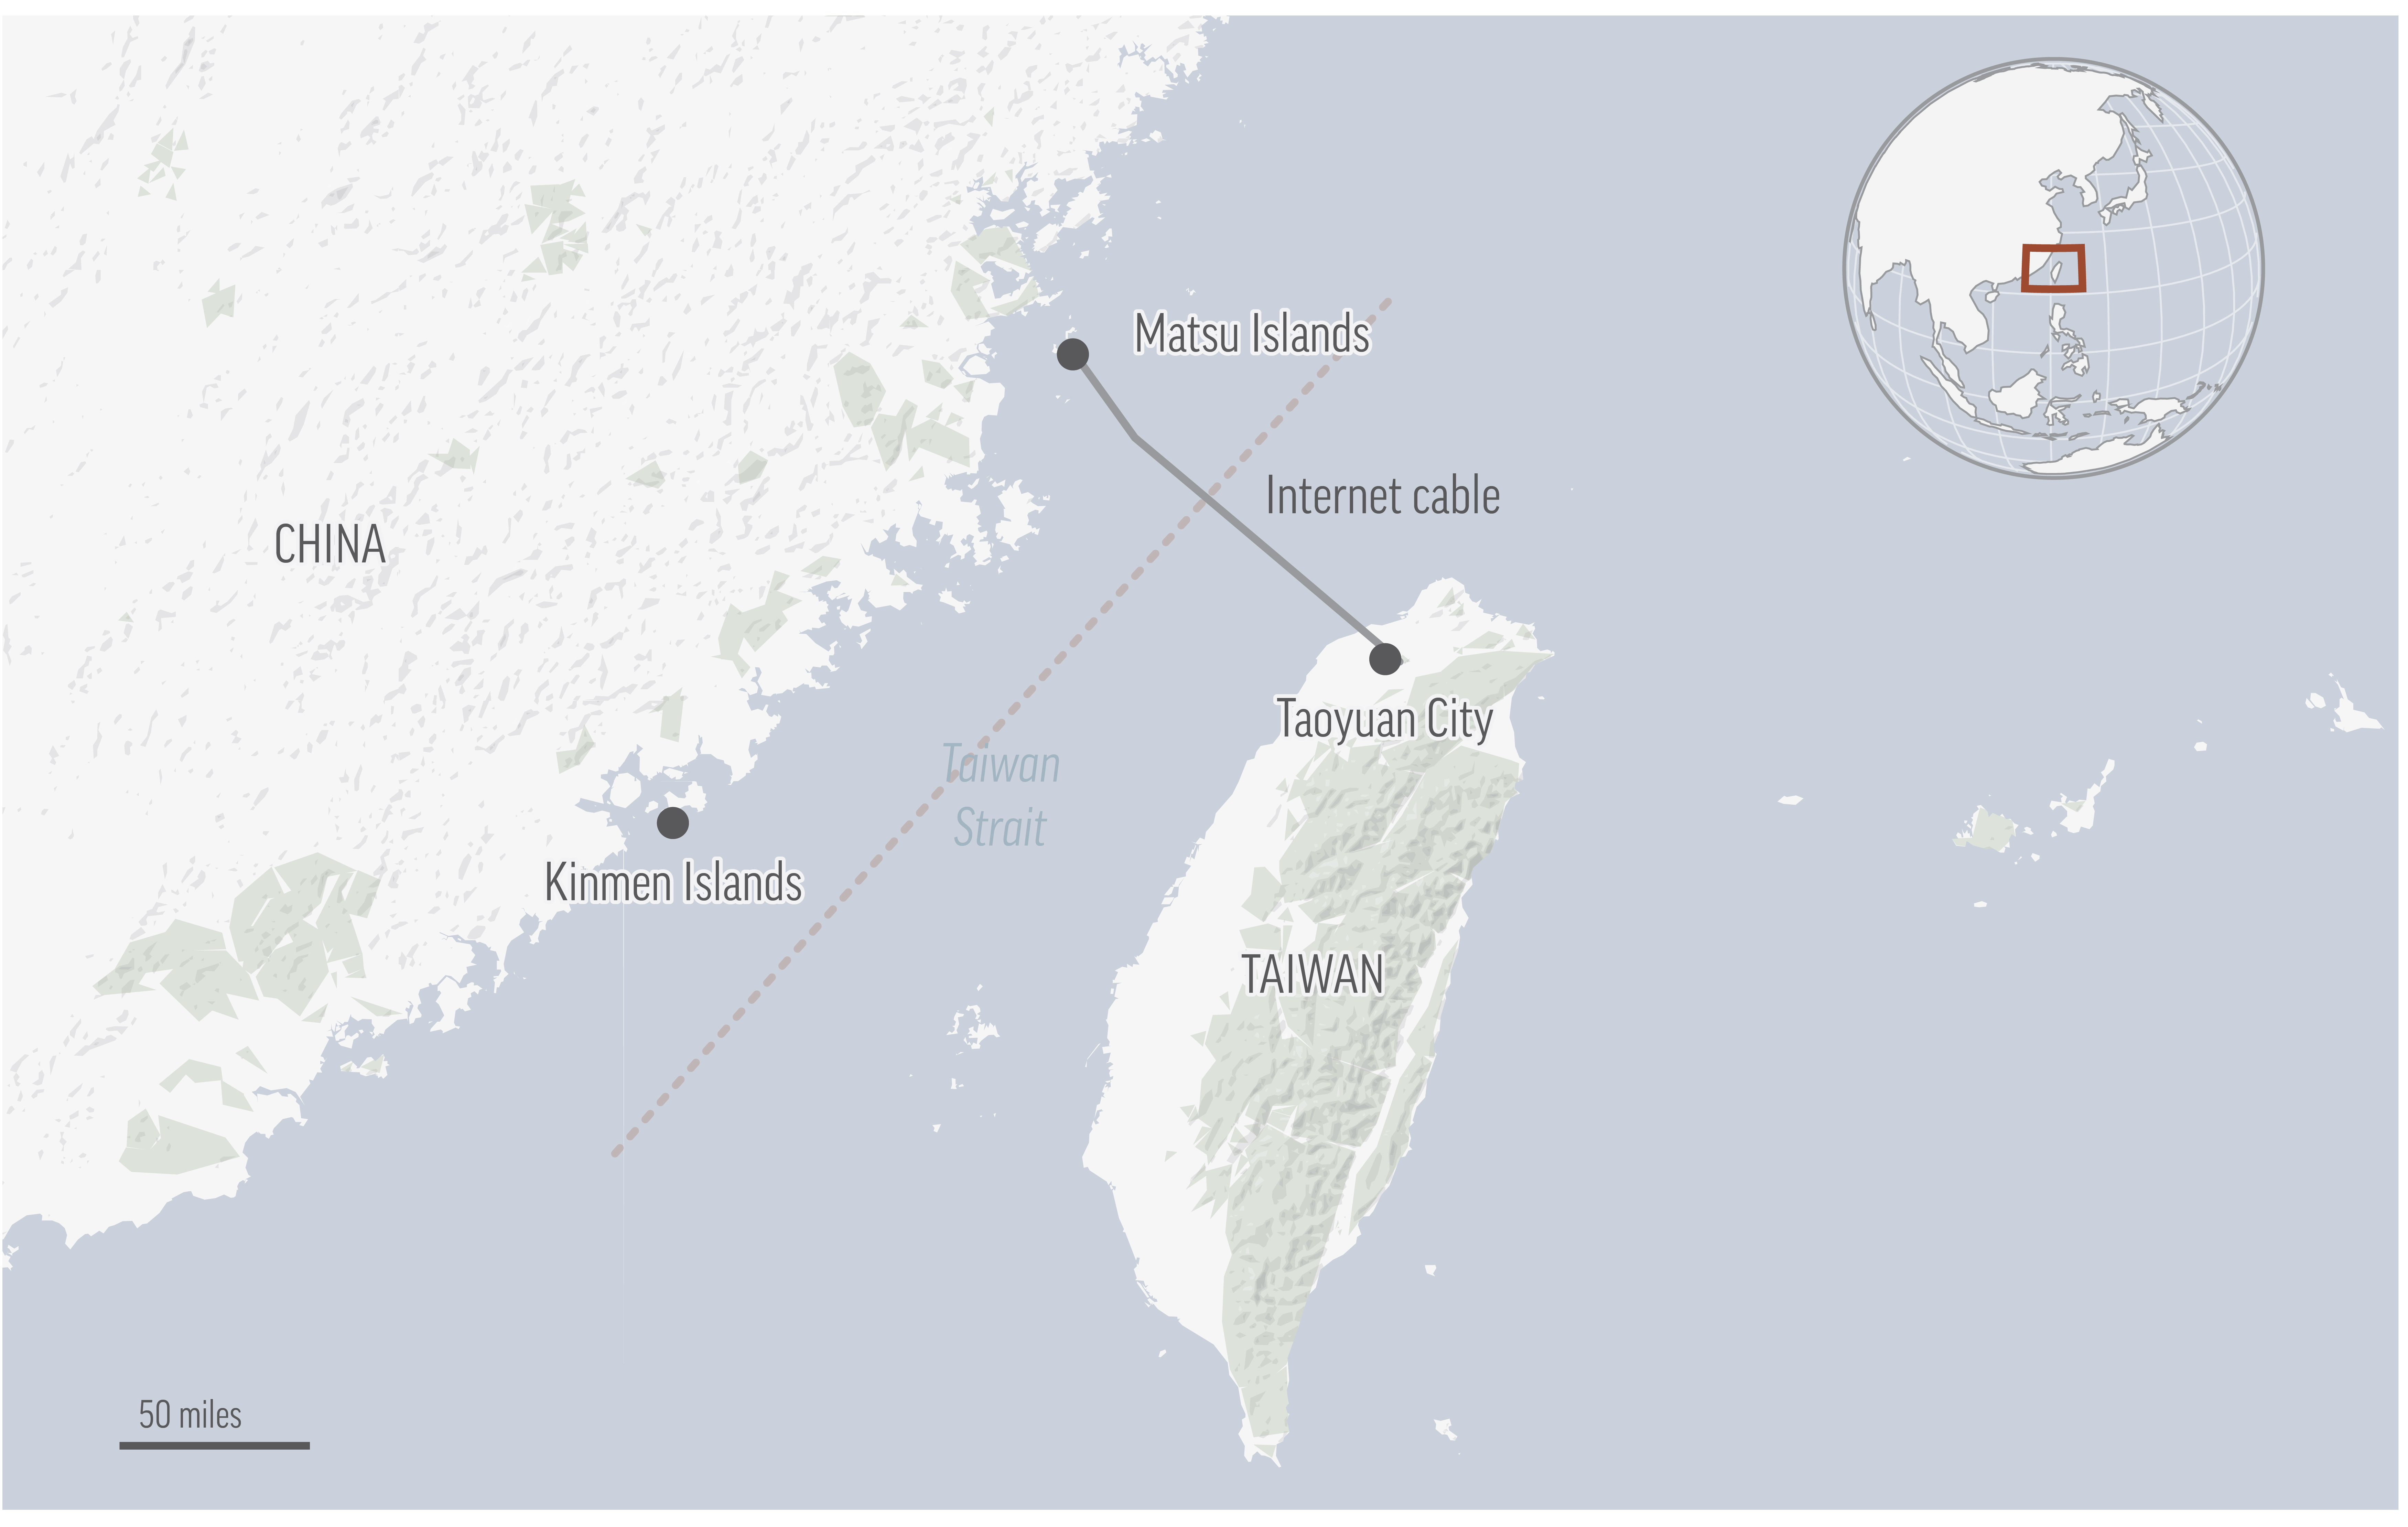 Chunghwa Telecom, el mayor proveedor de servicios de Taiwán y propietario de los dos cables submarinos, afirma que buques chinos cortaron los cables que dan servicio a las islas Matsu.